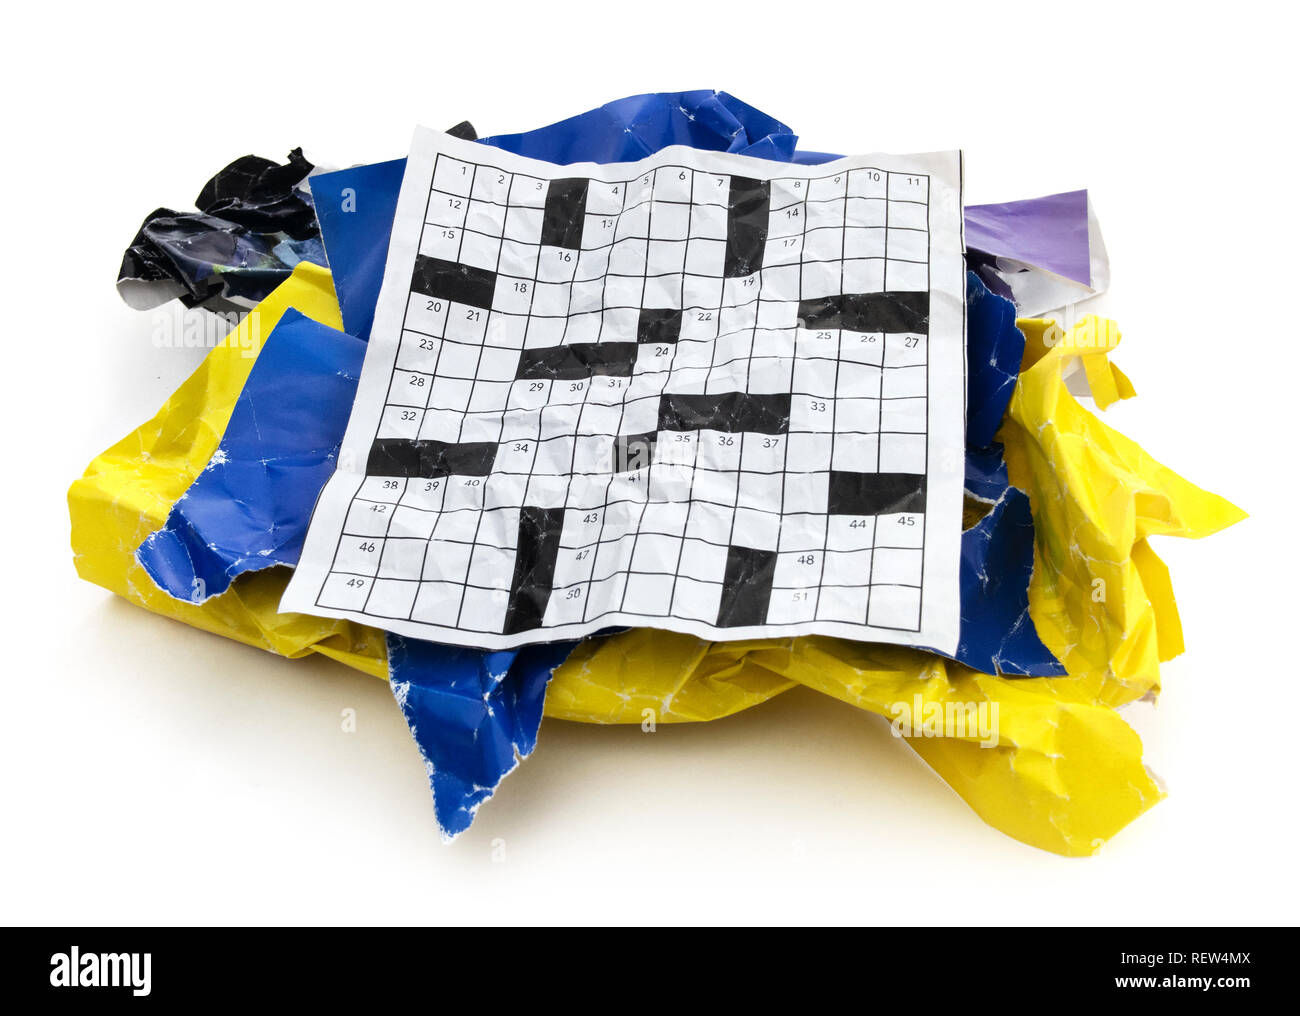 Puzzle Di Parole Immagini senza sfondo e Foto Stock ritagliate - Alamy